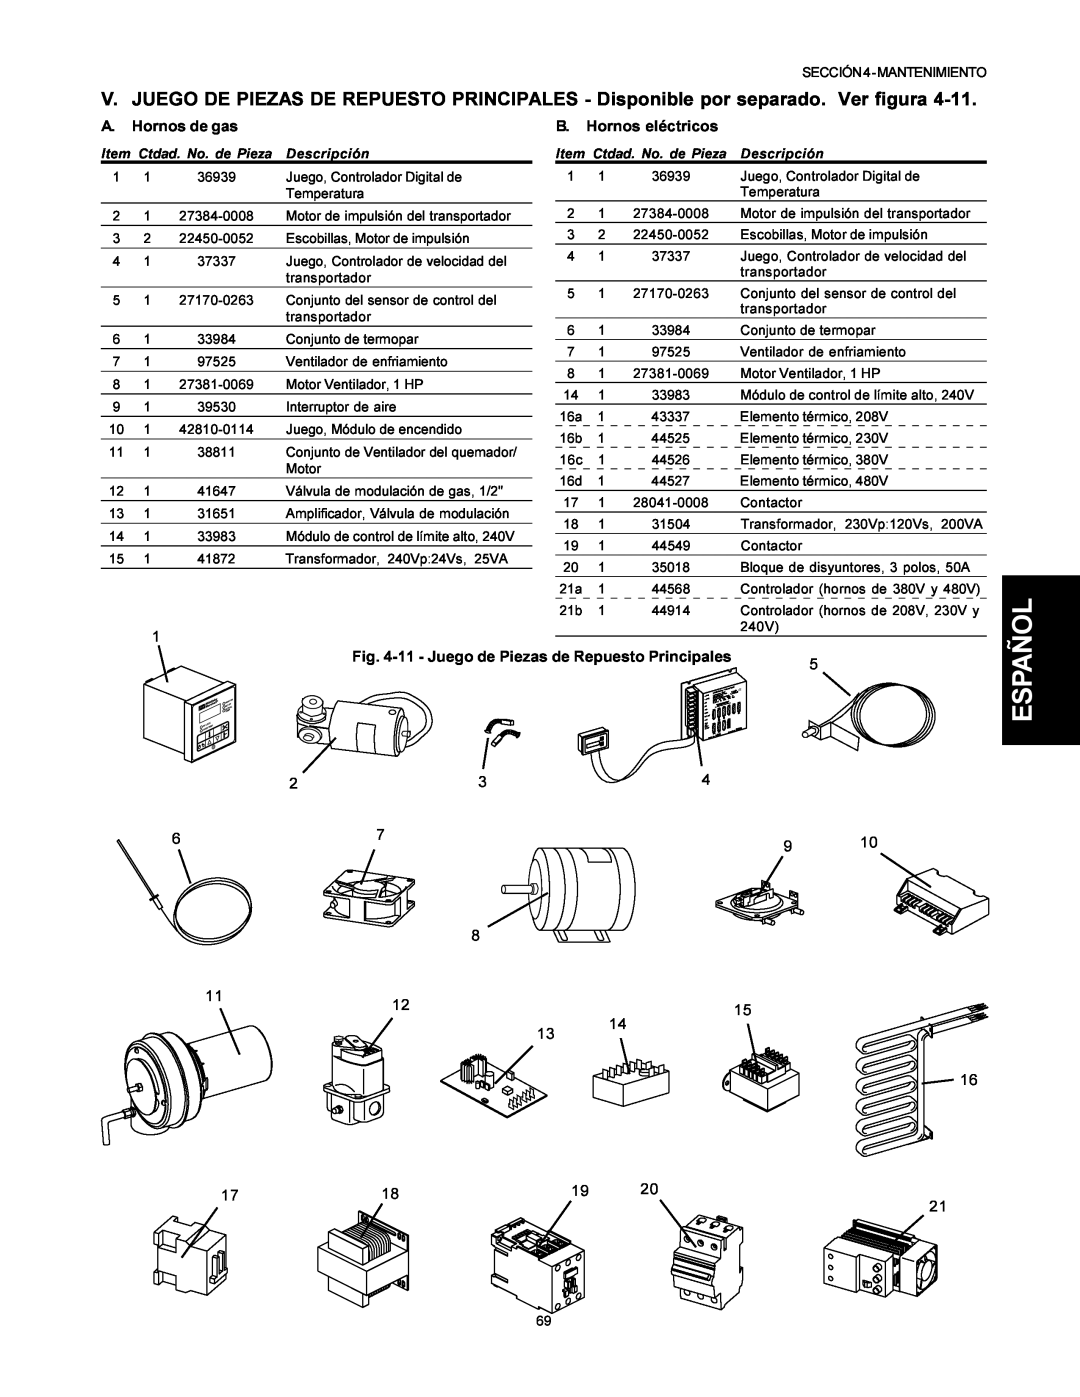 Middleby Marshall PS500 A. Hornos de gas, B. Hornos eléctricos, 11 - Juego de Piezas de Repuesto Principales, Descripción 